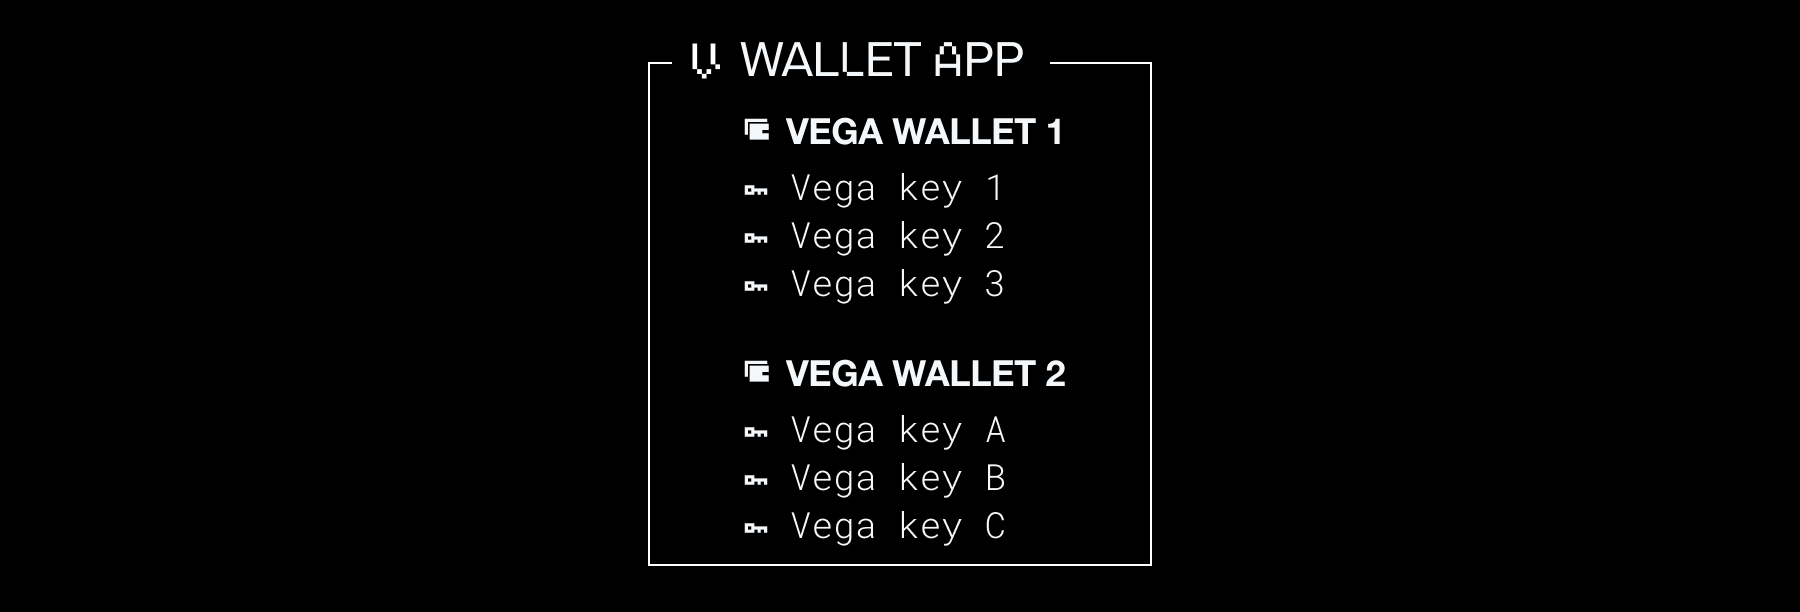 Wallet app with multiple keys